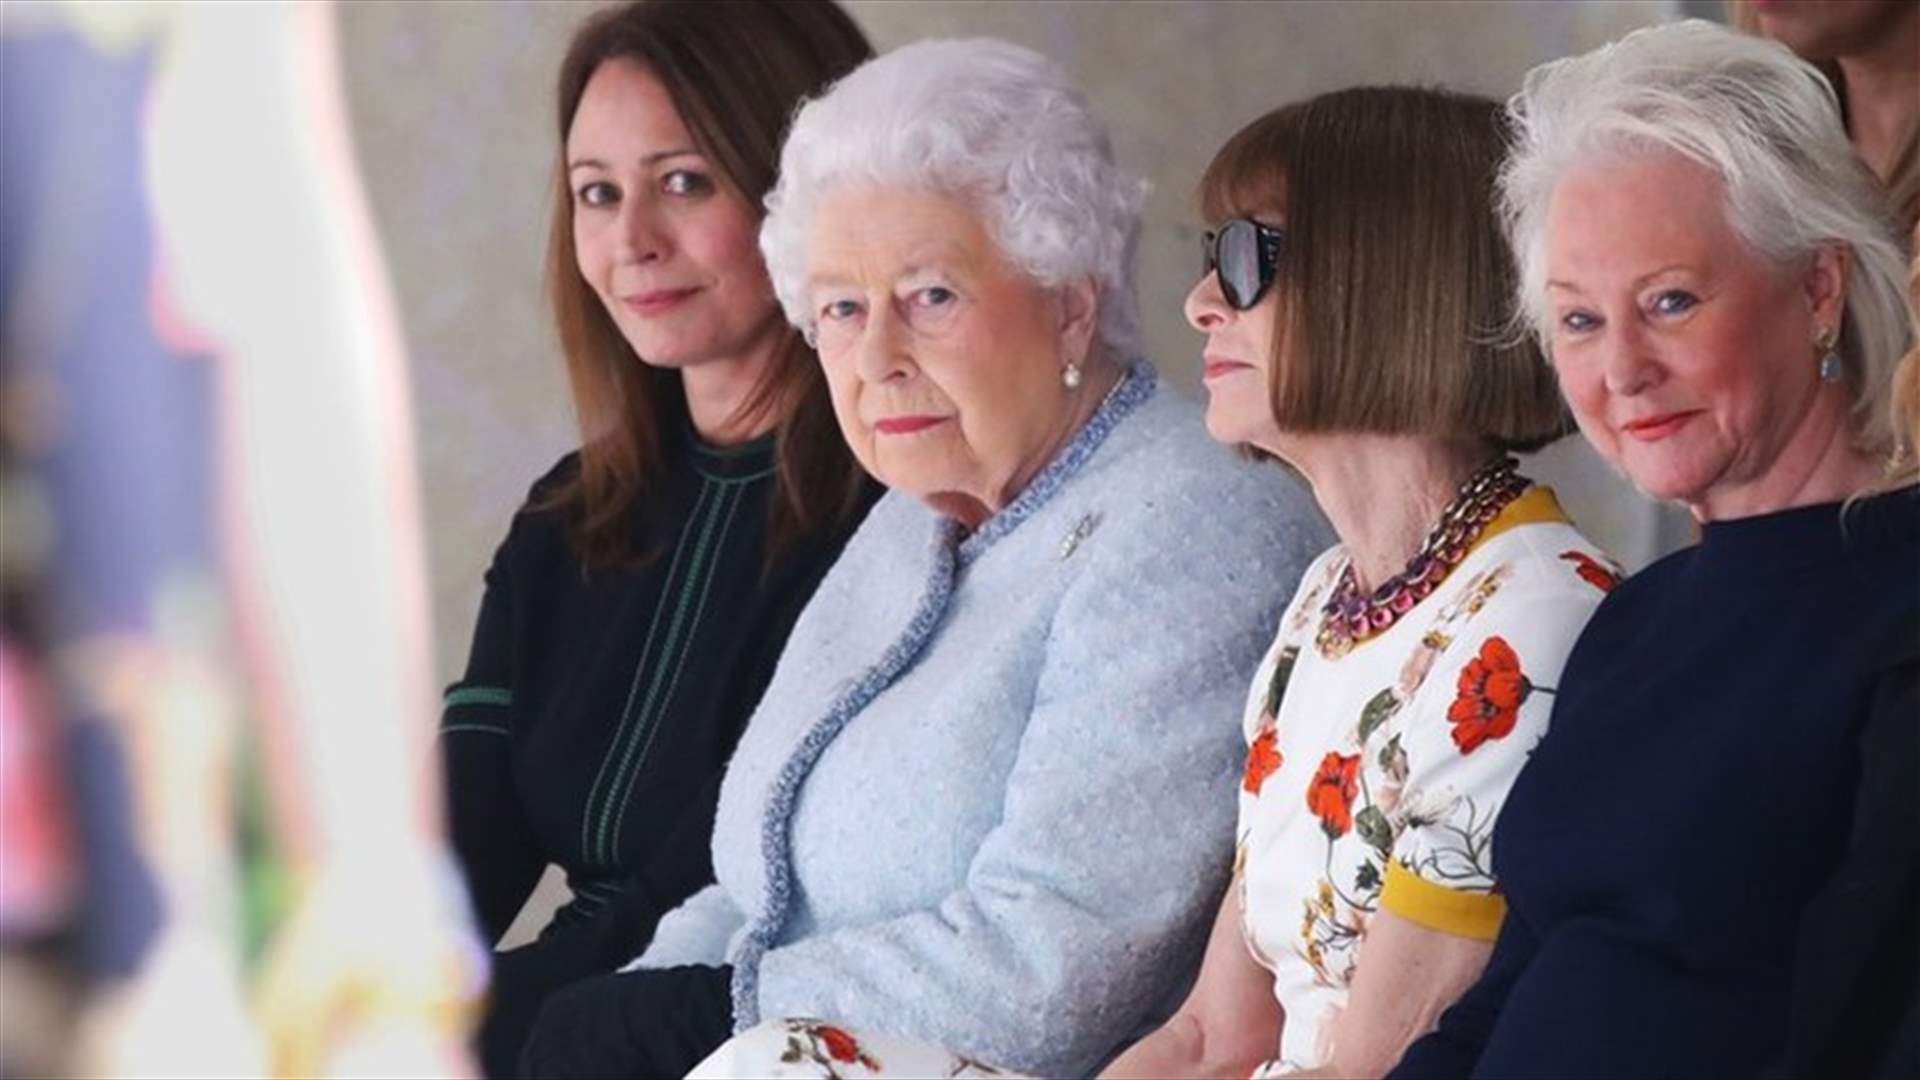 ملكة بريطانيا تفاجئ الجميع وتحضر عرض أزياء للمرّة الأولى!